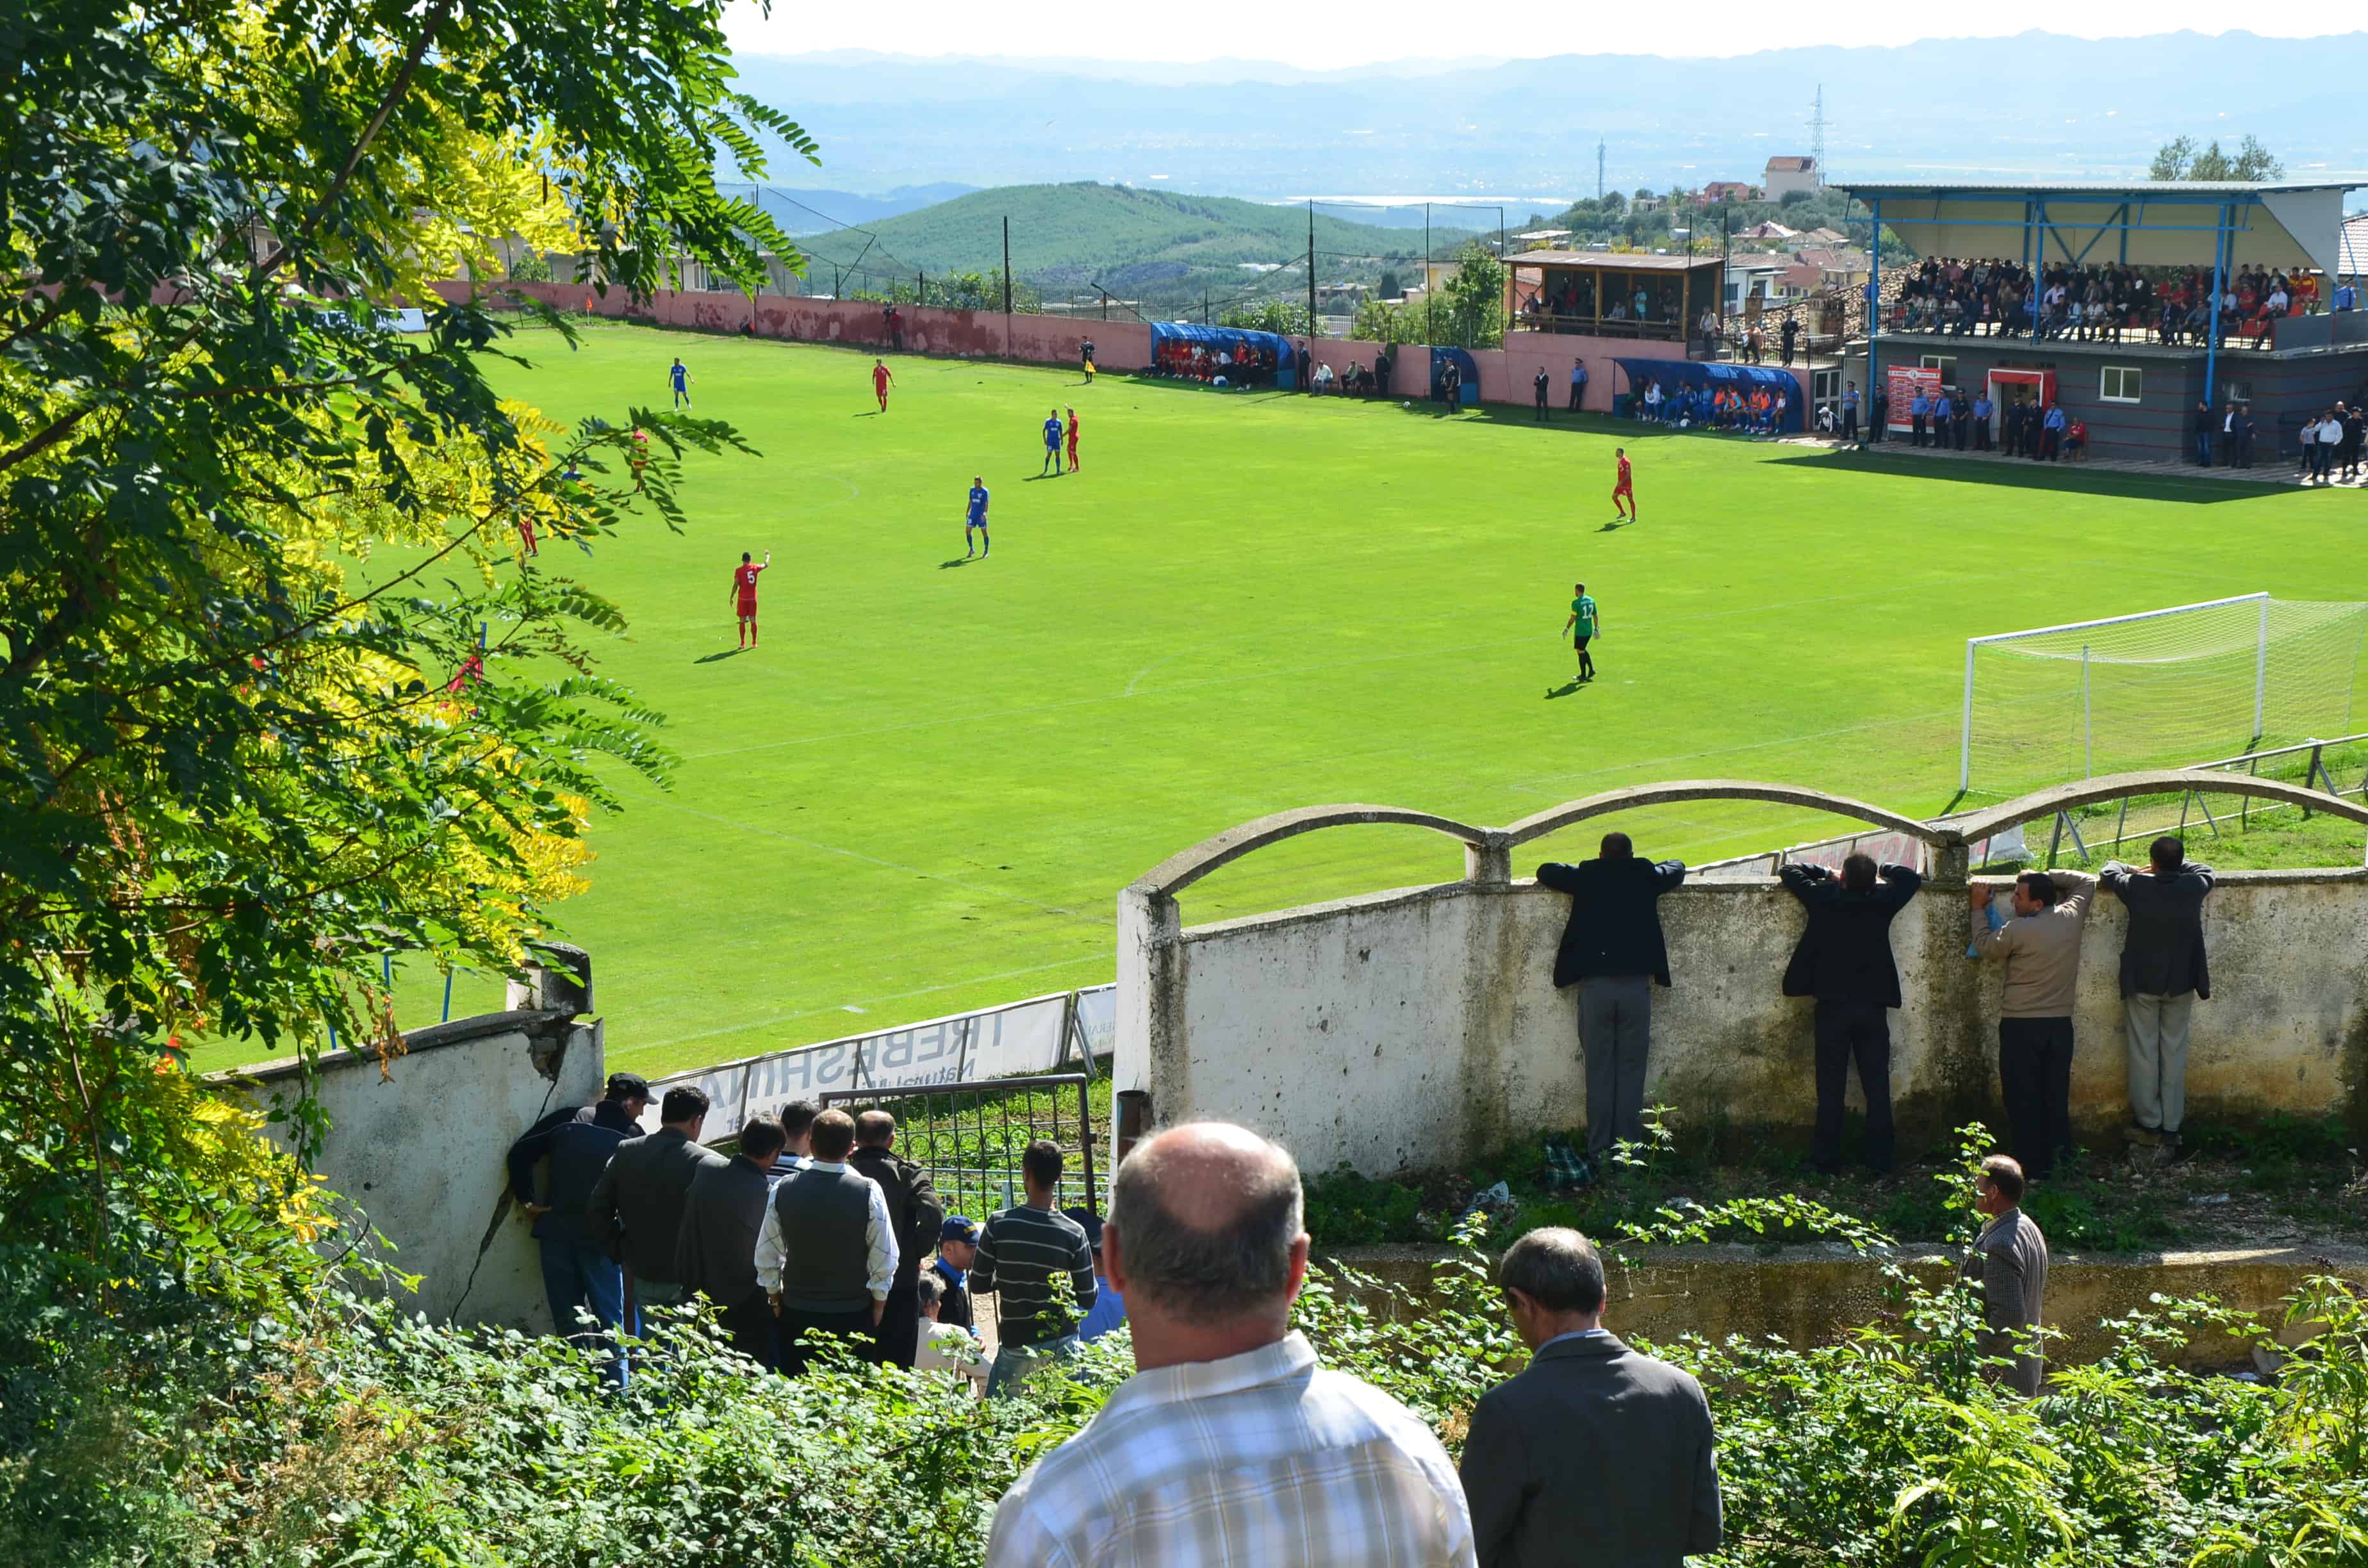 Kastrioti Stadium in Krujë, Albania